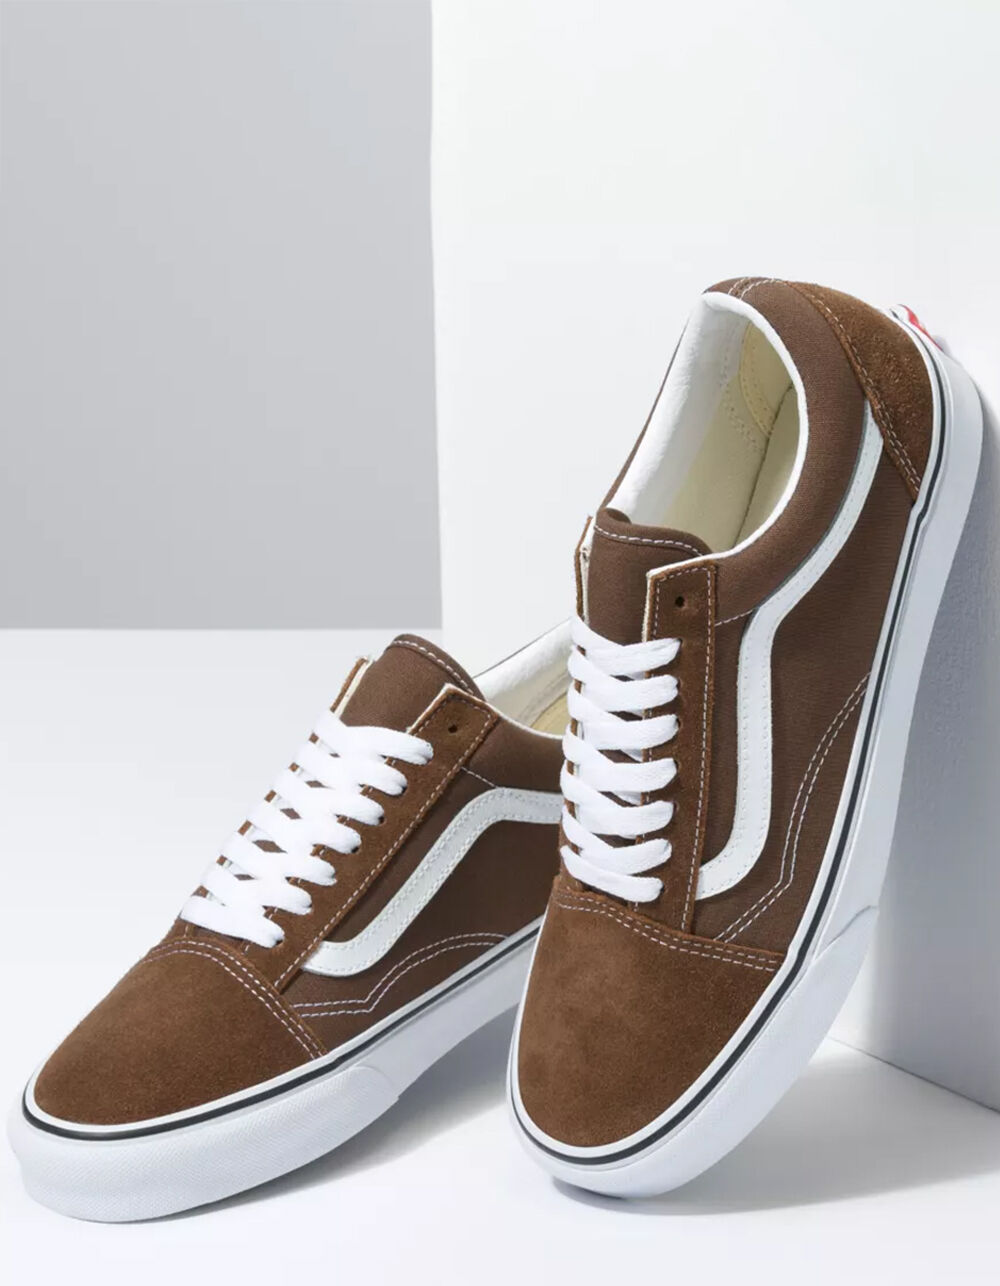 Vans, Shoes, Vans Old Skool Canvas Leather Brown Louis Vuitton Shoes